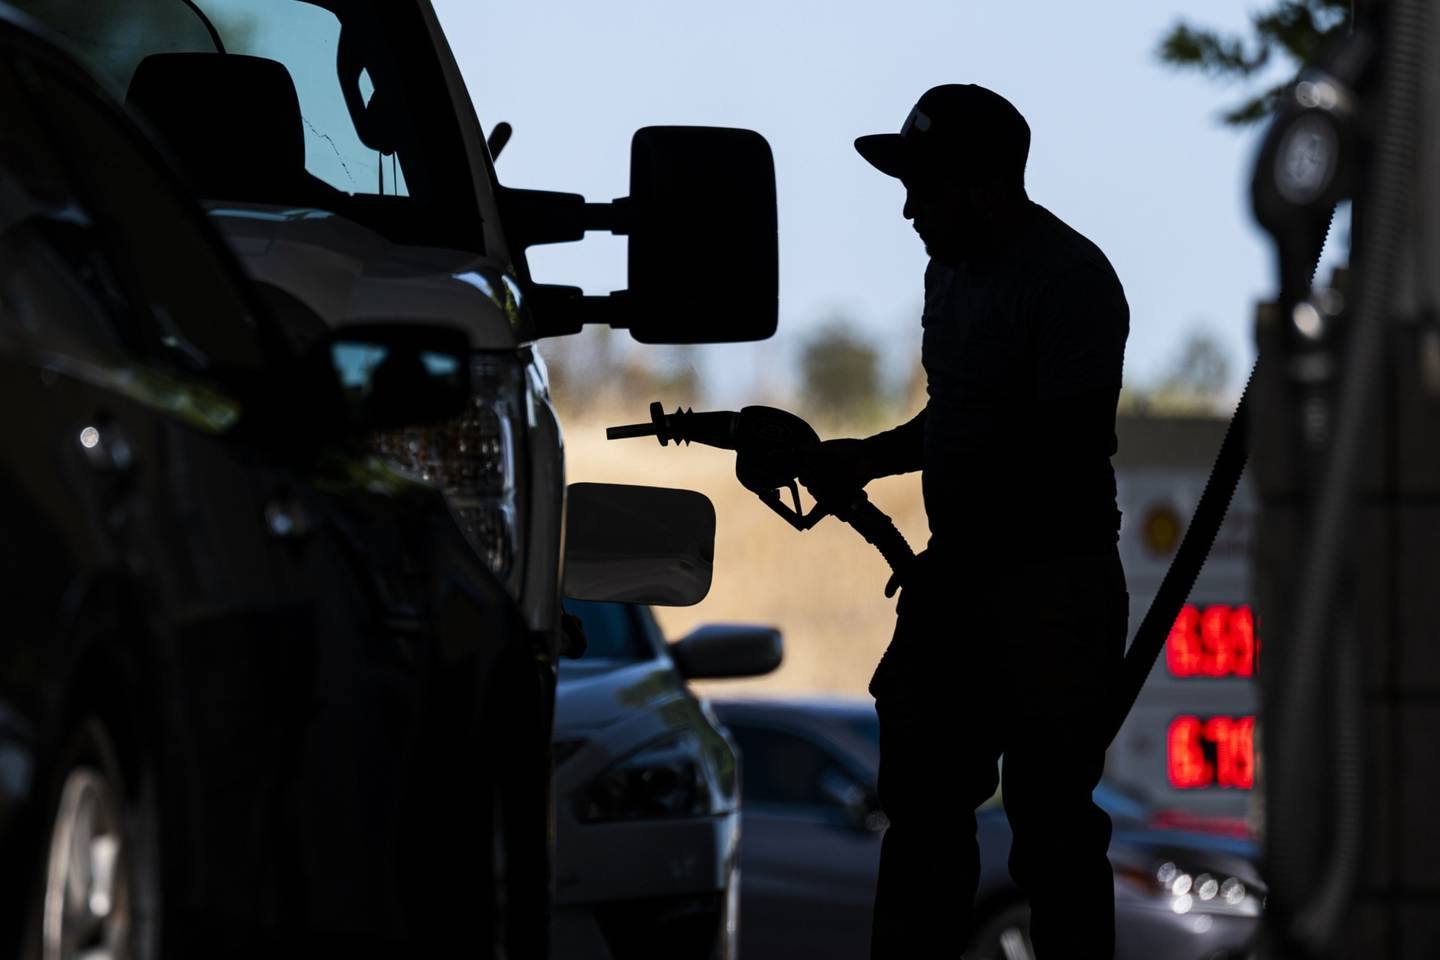 Un cliente de una gasolinera inserta la manguera de una bomba para cargar combustible.